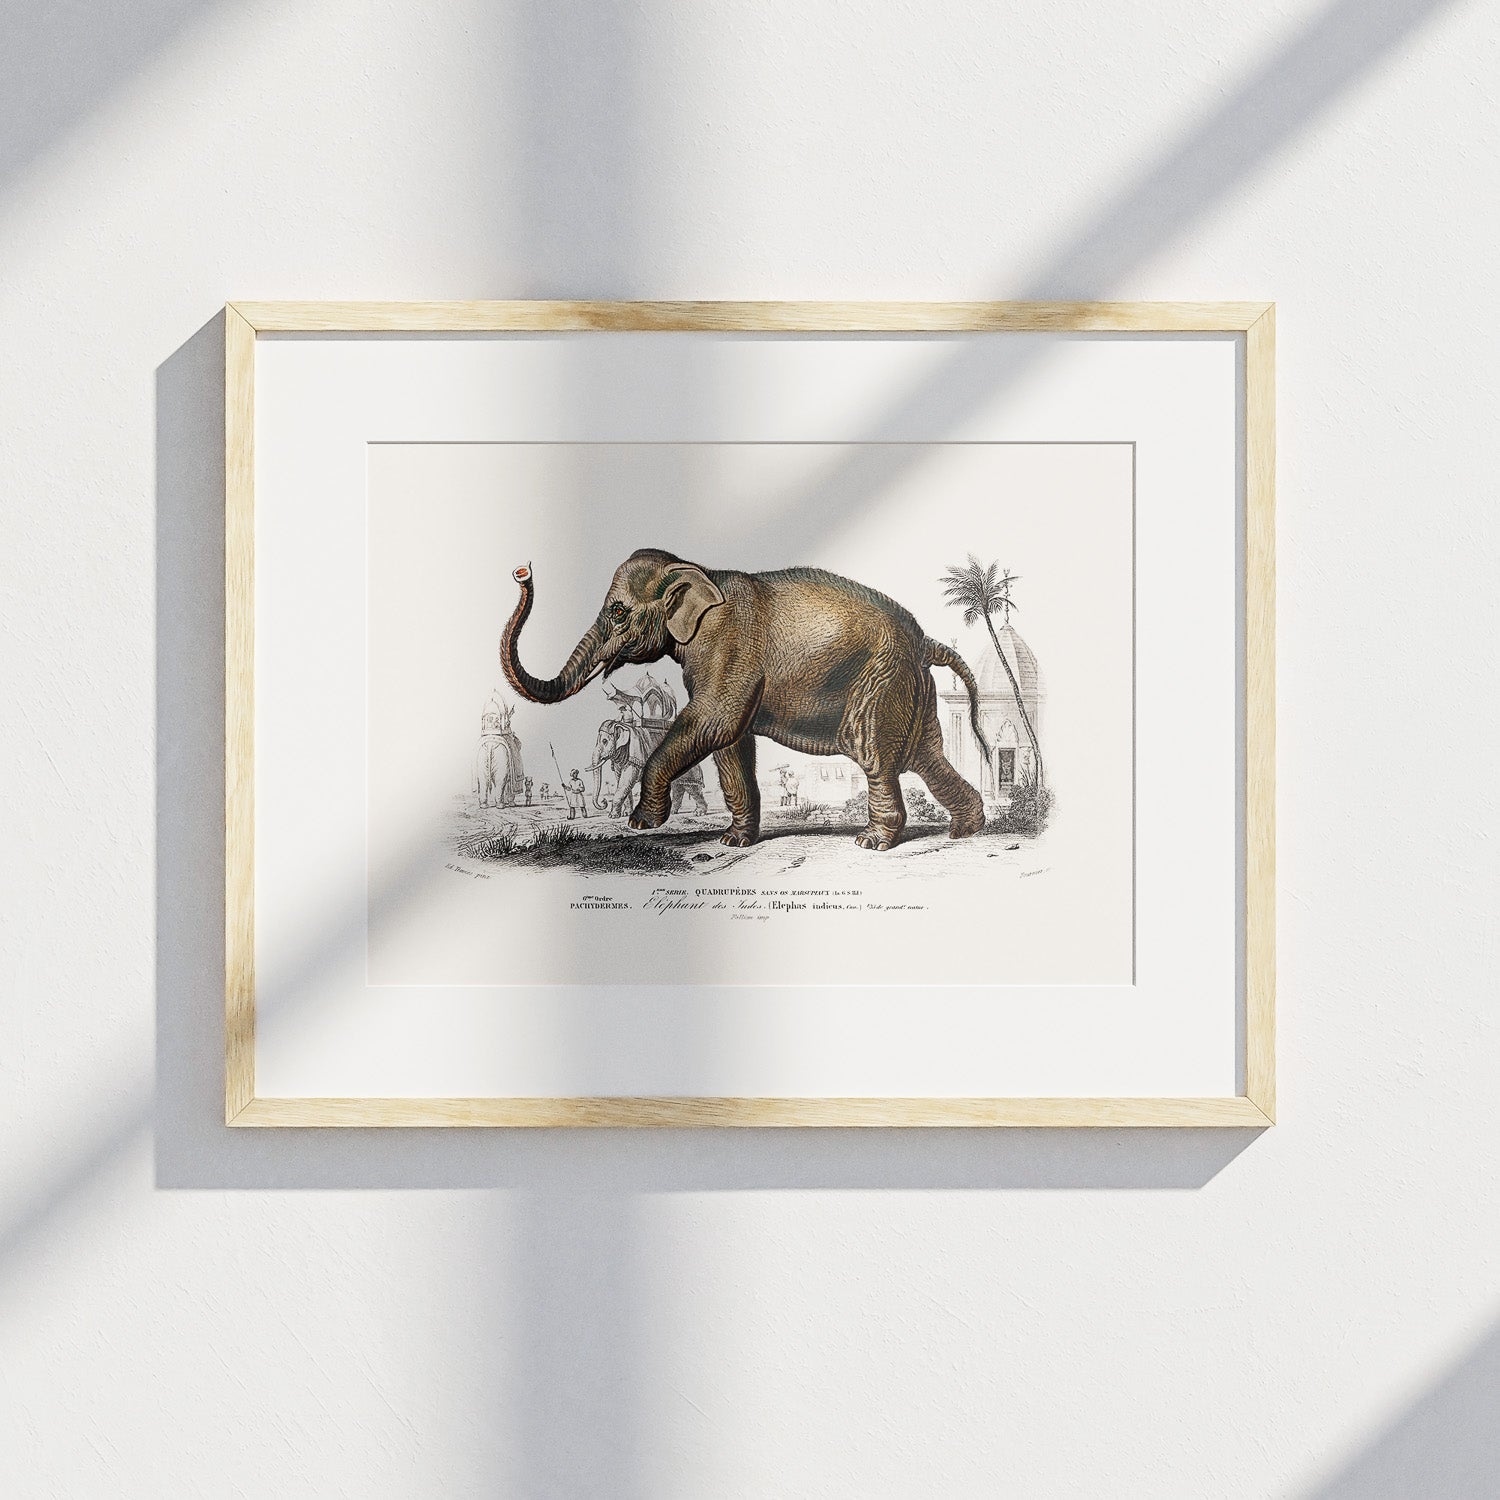 Historisk poster från 1837 som visar en illustration av en elefant